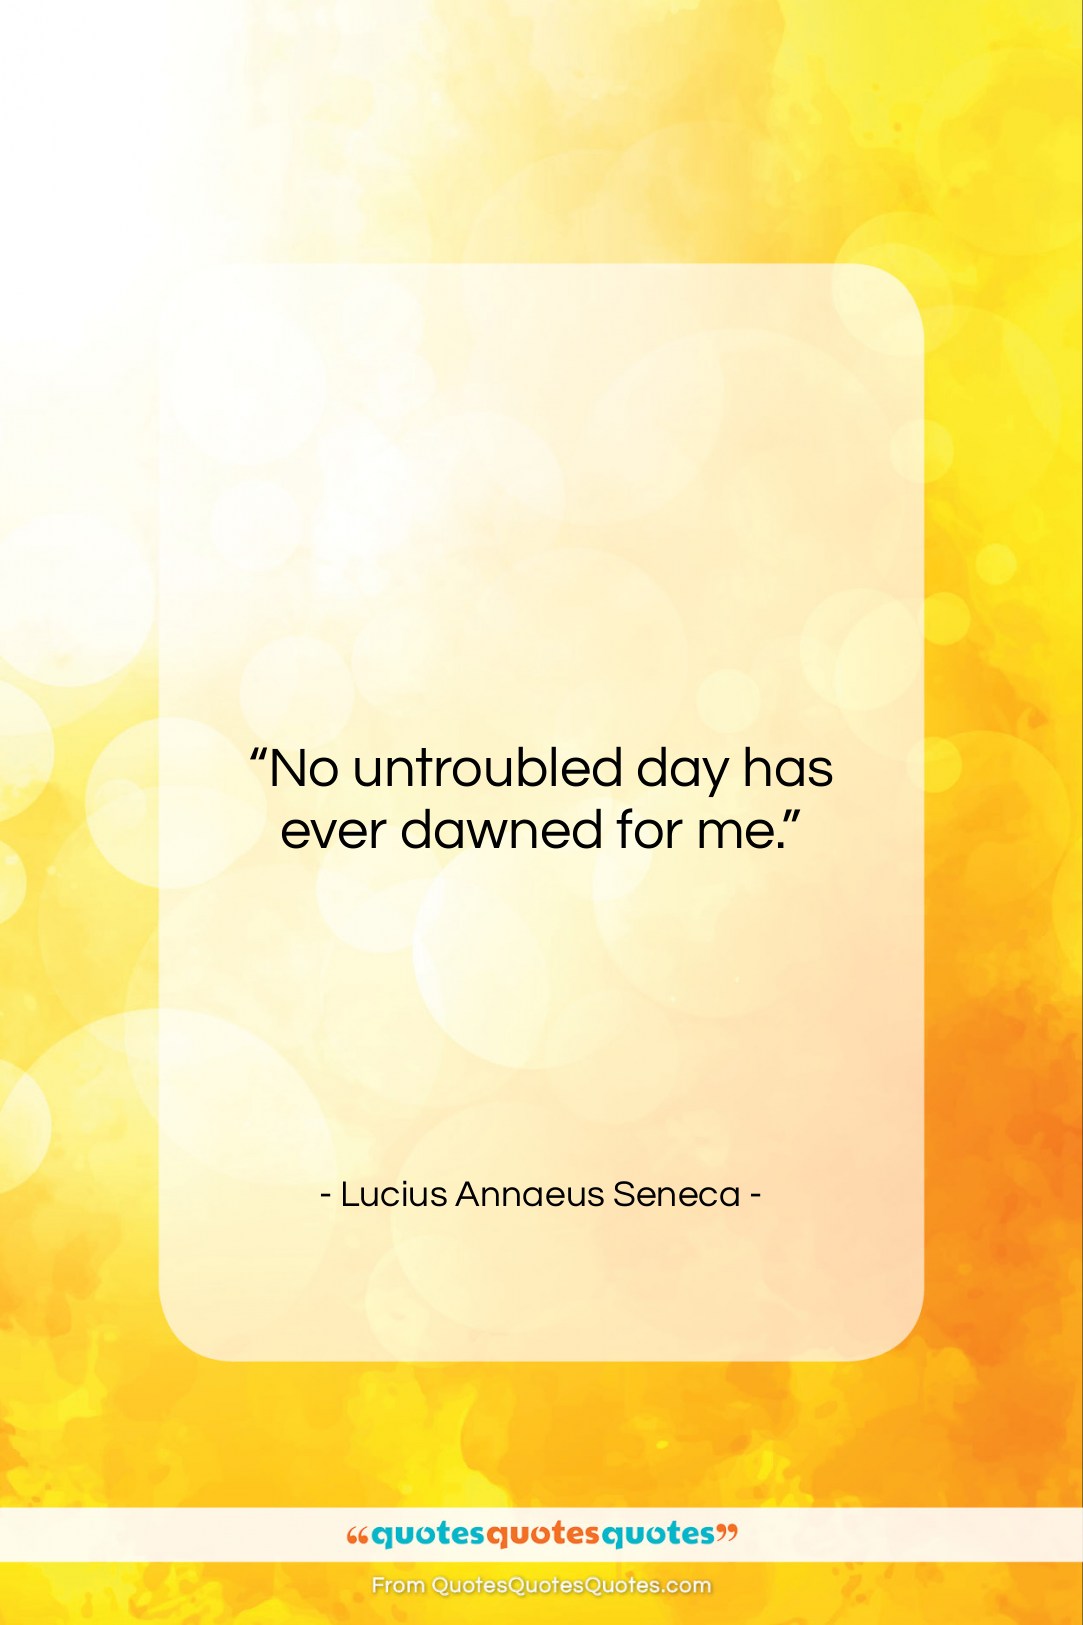 Lucius Annaeus Seneca quote: “No untroubled day has ever dawned for…”- at QuotesQuotesQuotes.com